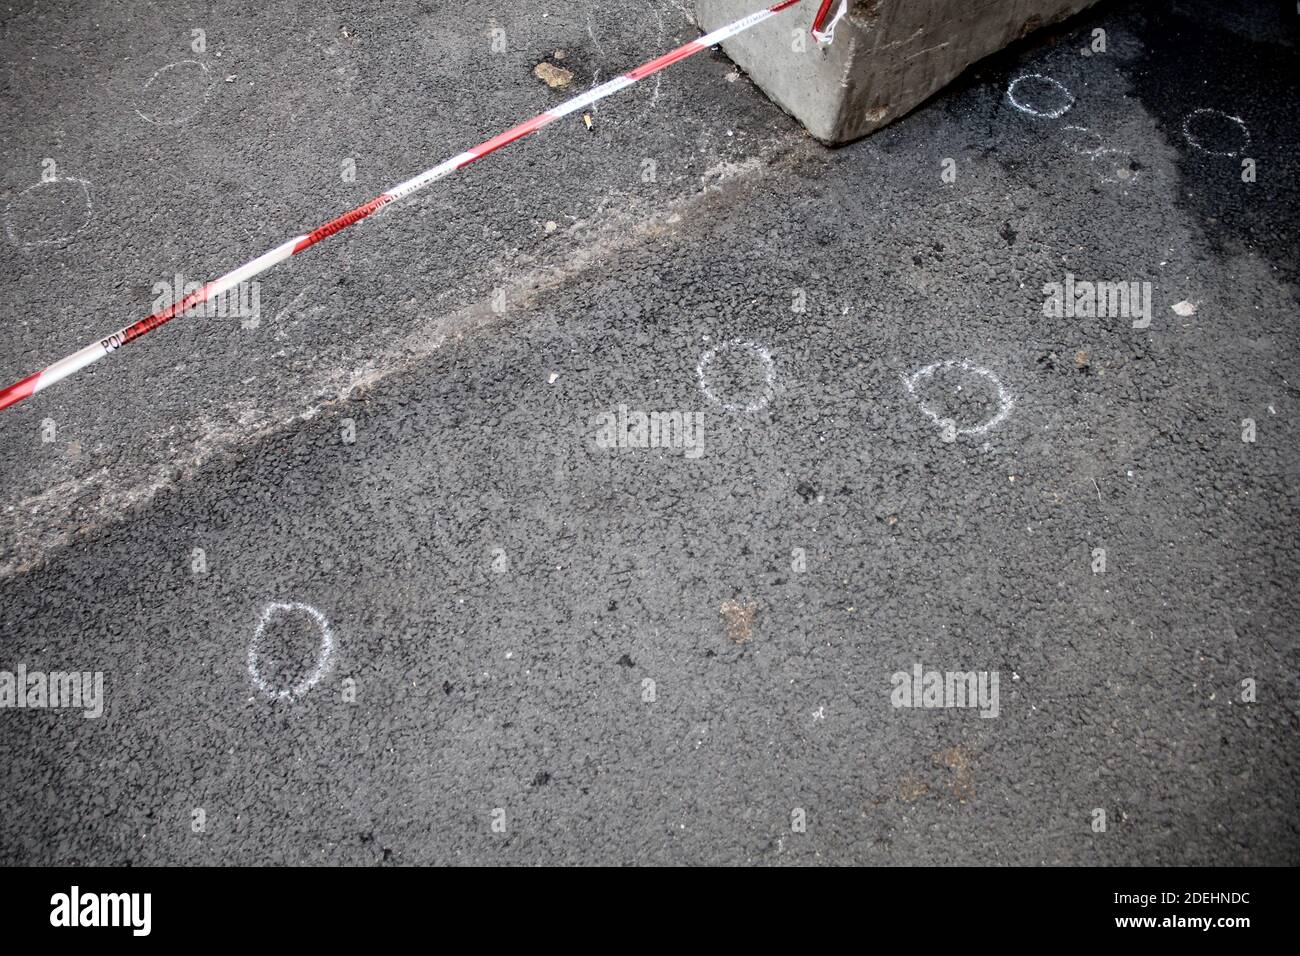 Questa foto, scattata il 25 maggio 2019, mostra buchi e acciai graduati utilizzati dalla polizia francese esposti sul terreno a Lione, nel sud-est della Francia, il giorno dopo un sospetto pacchetto di bombe lungo una strada pedonale nel cuore della città. Foto di Mathis Boussuge/ABACAPRESS.COM Foto Stock